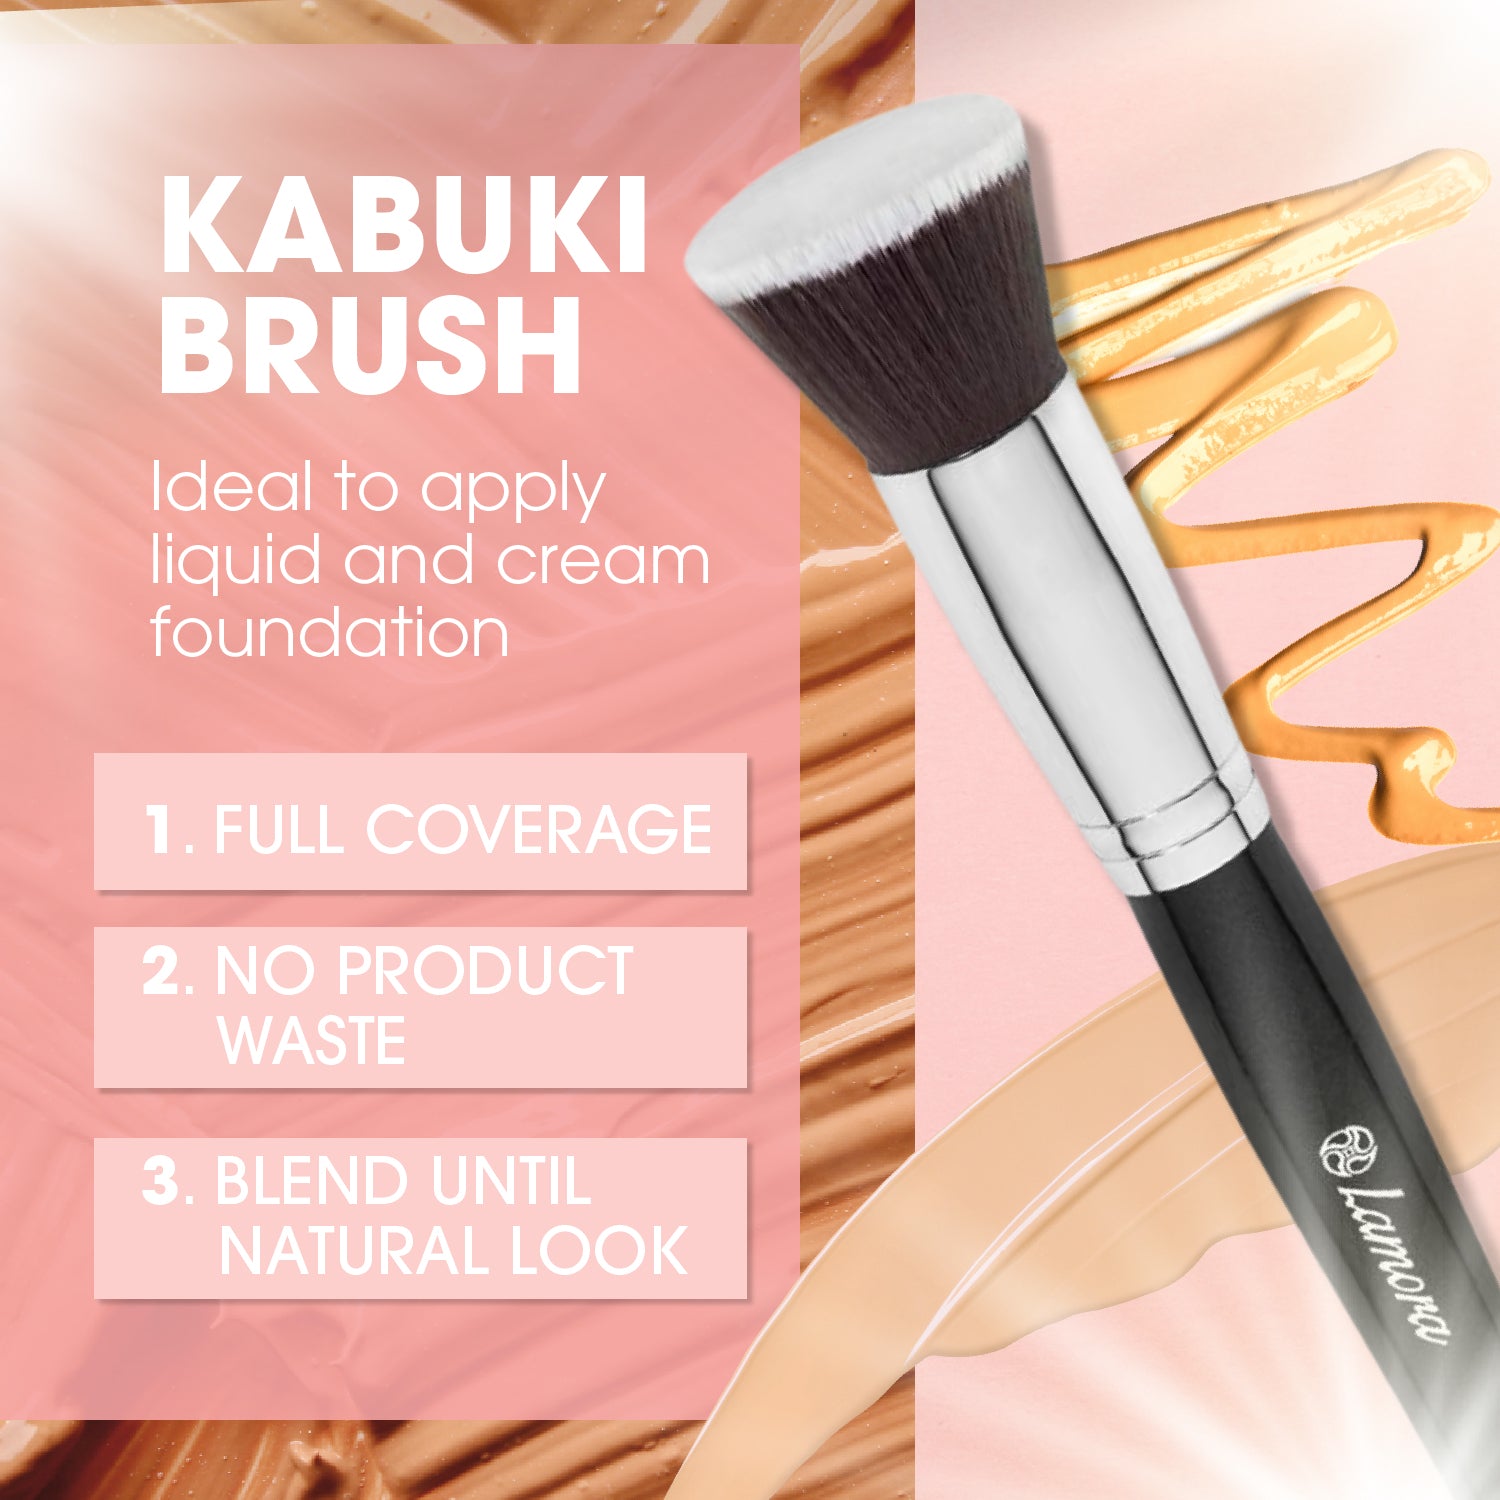 The Essentials Brush Set, Makeup Brushes